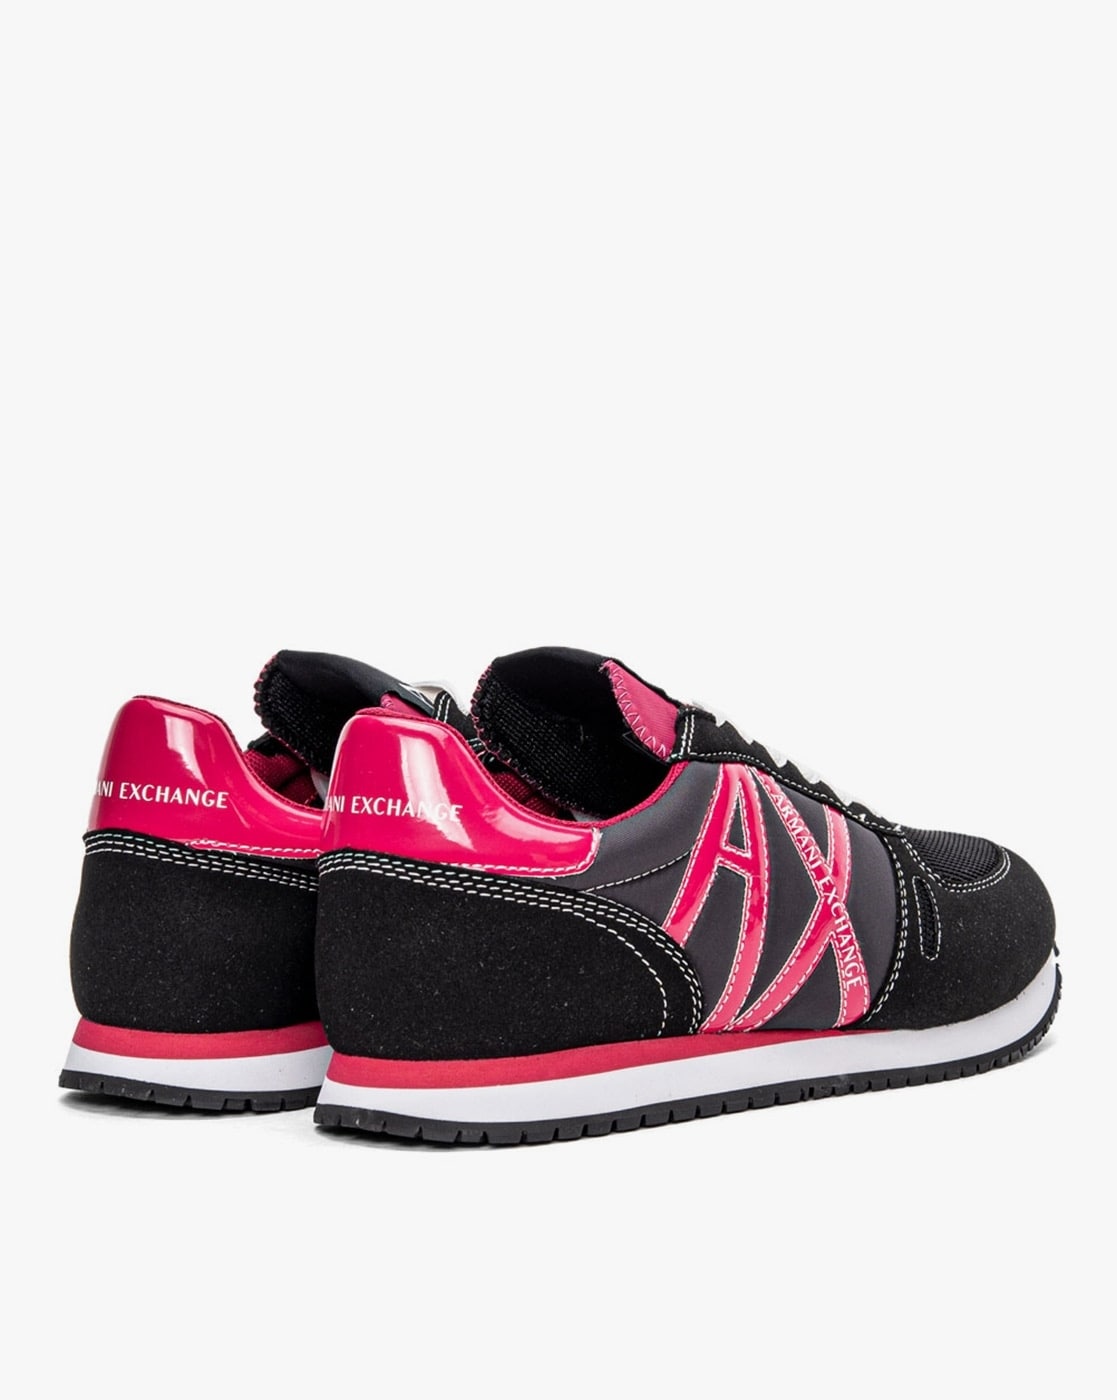 Armani Exchange A/X Women's Fashion Sneakers- Color: Black / Pink- Sz: 9.5  -New | eBay